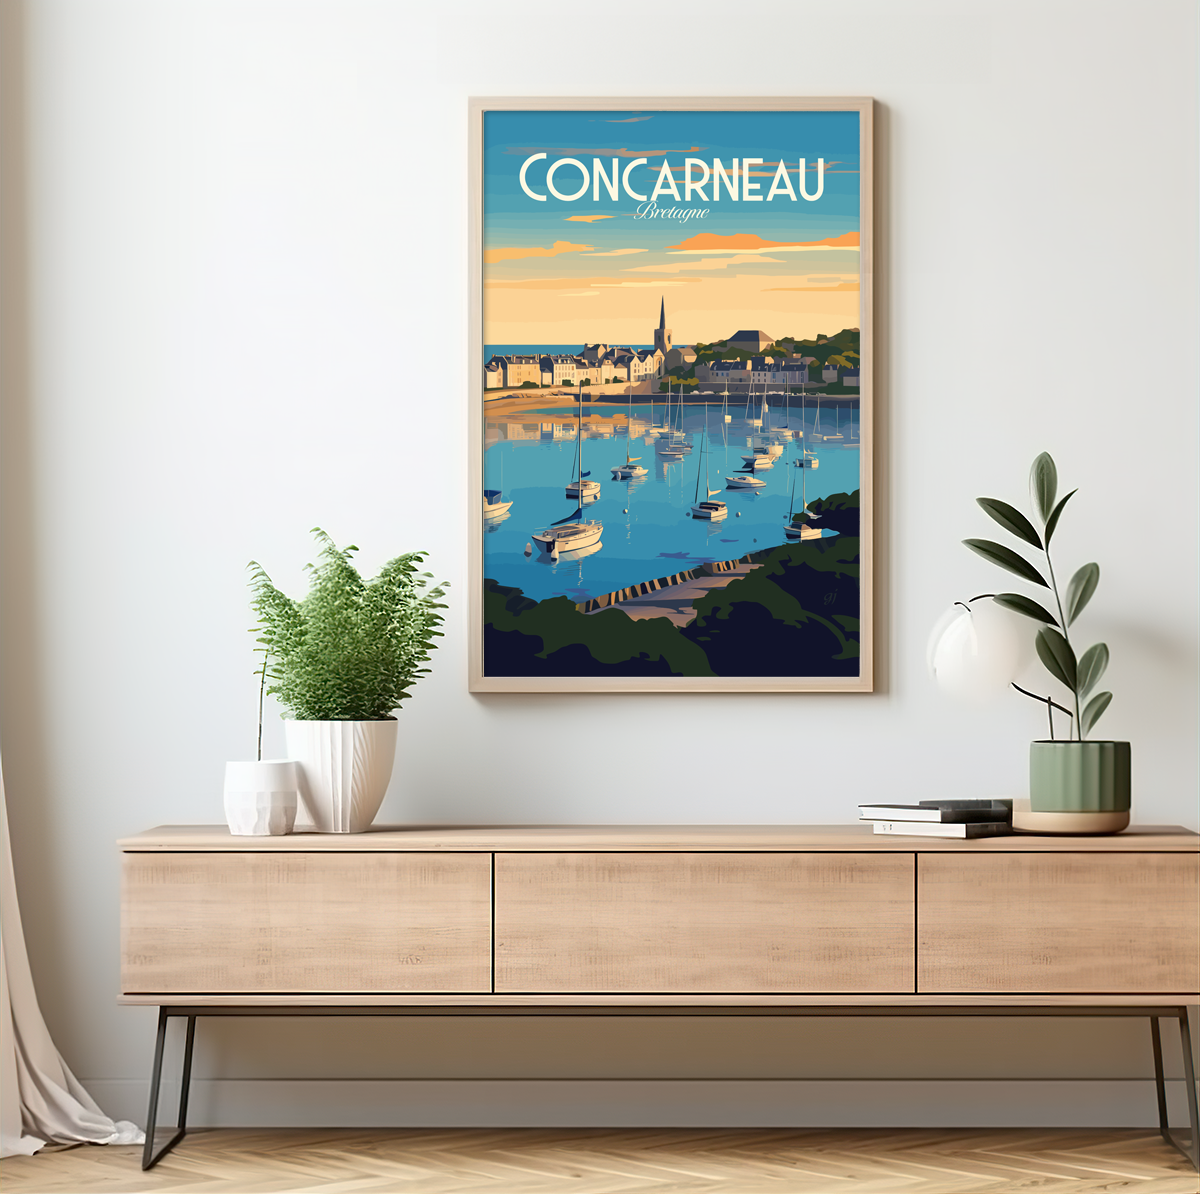 Concarneau poster by bon voyage design